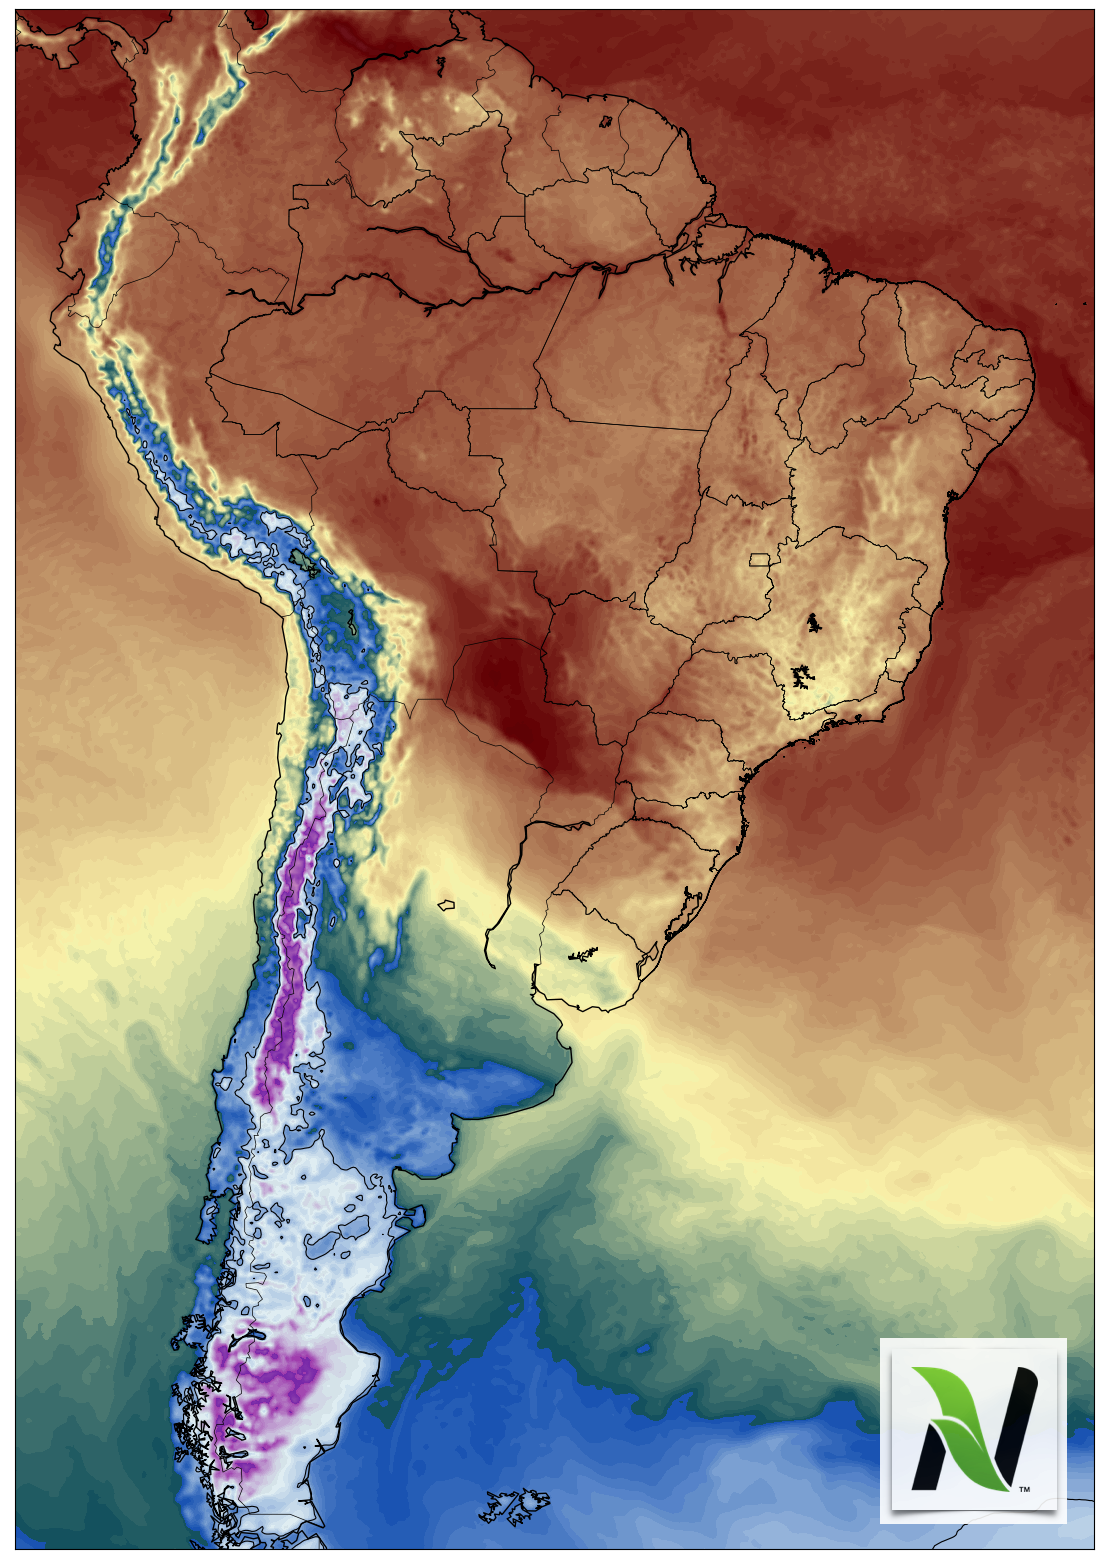 Mapa da america latina referente a variações climáticas.